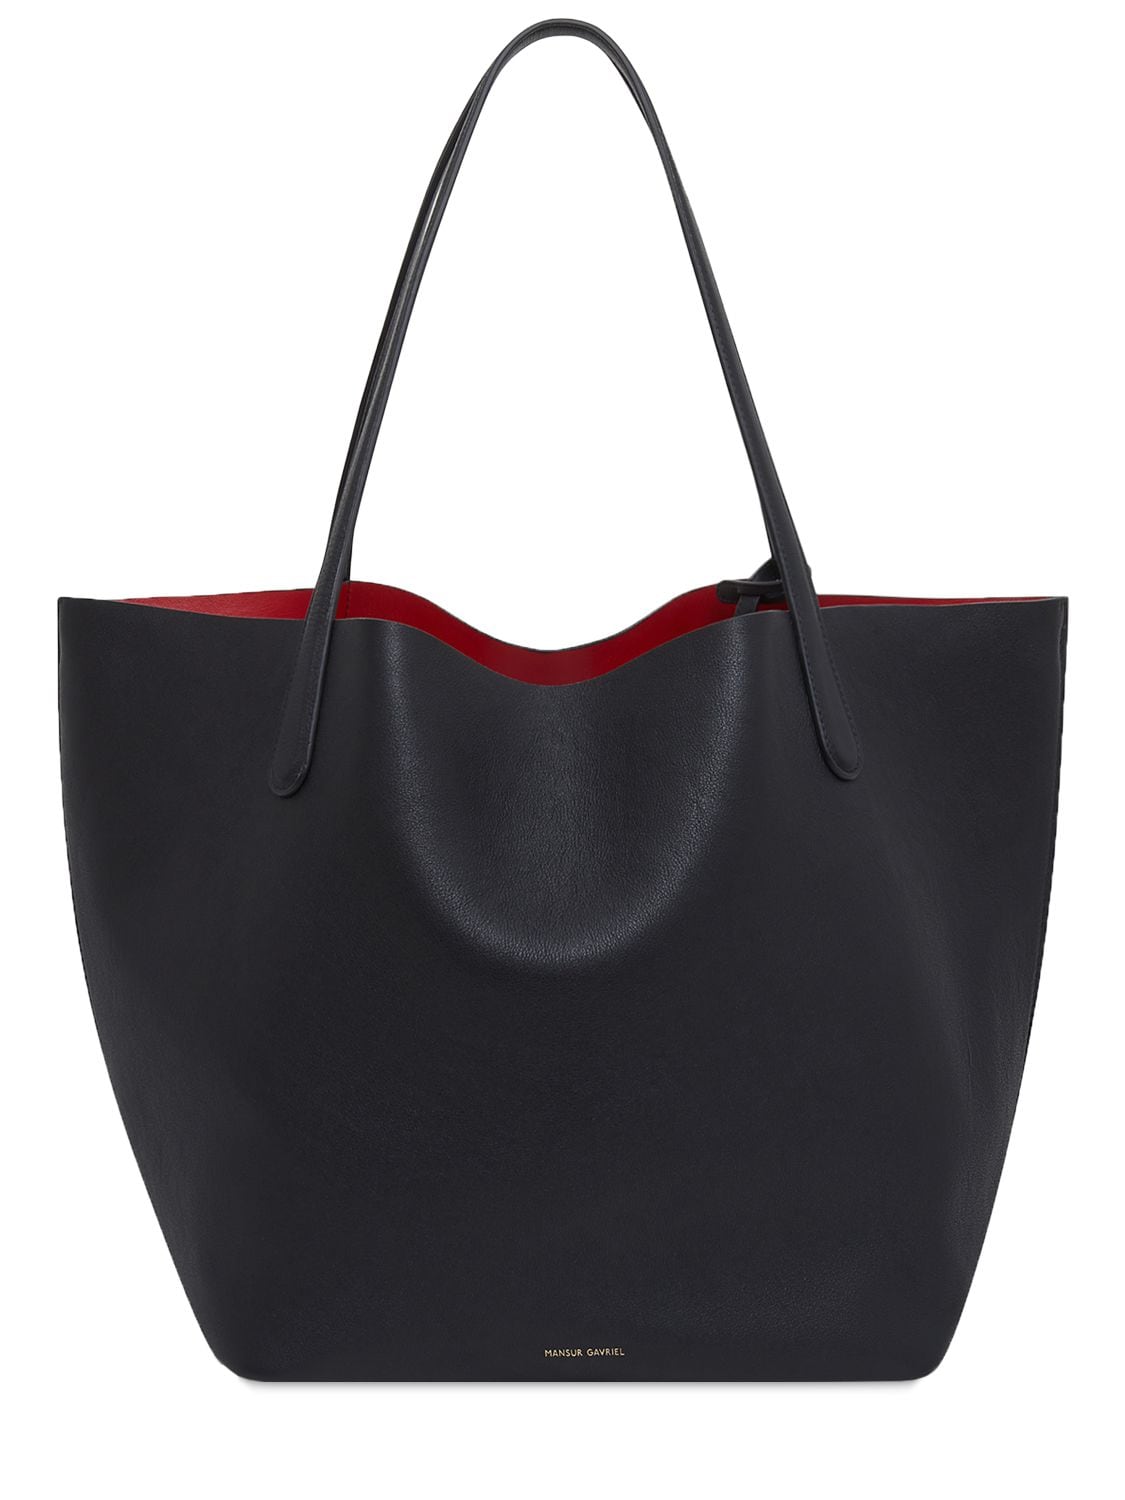 Shop Women's MANSUR GAVRIEL Bags - Black Leather Tote Bag